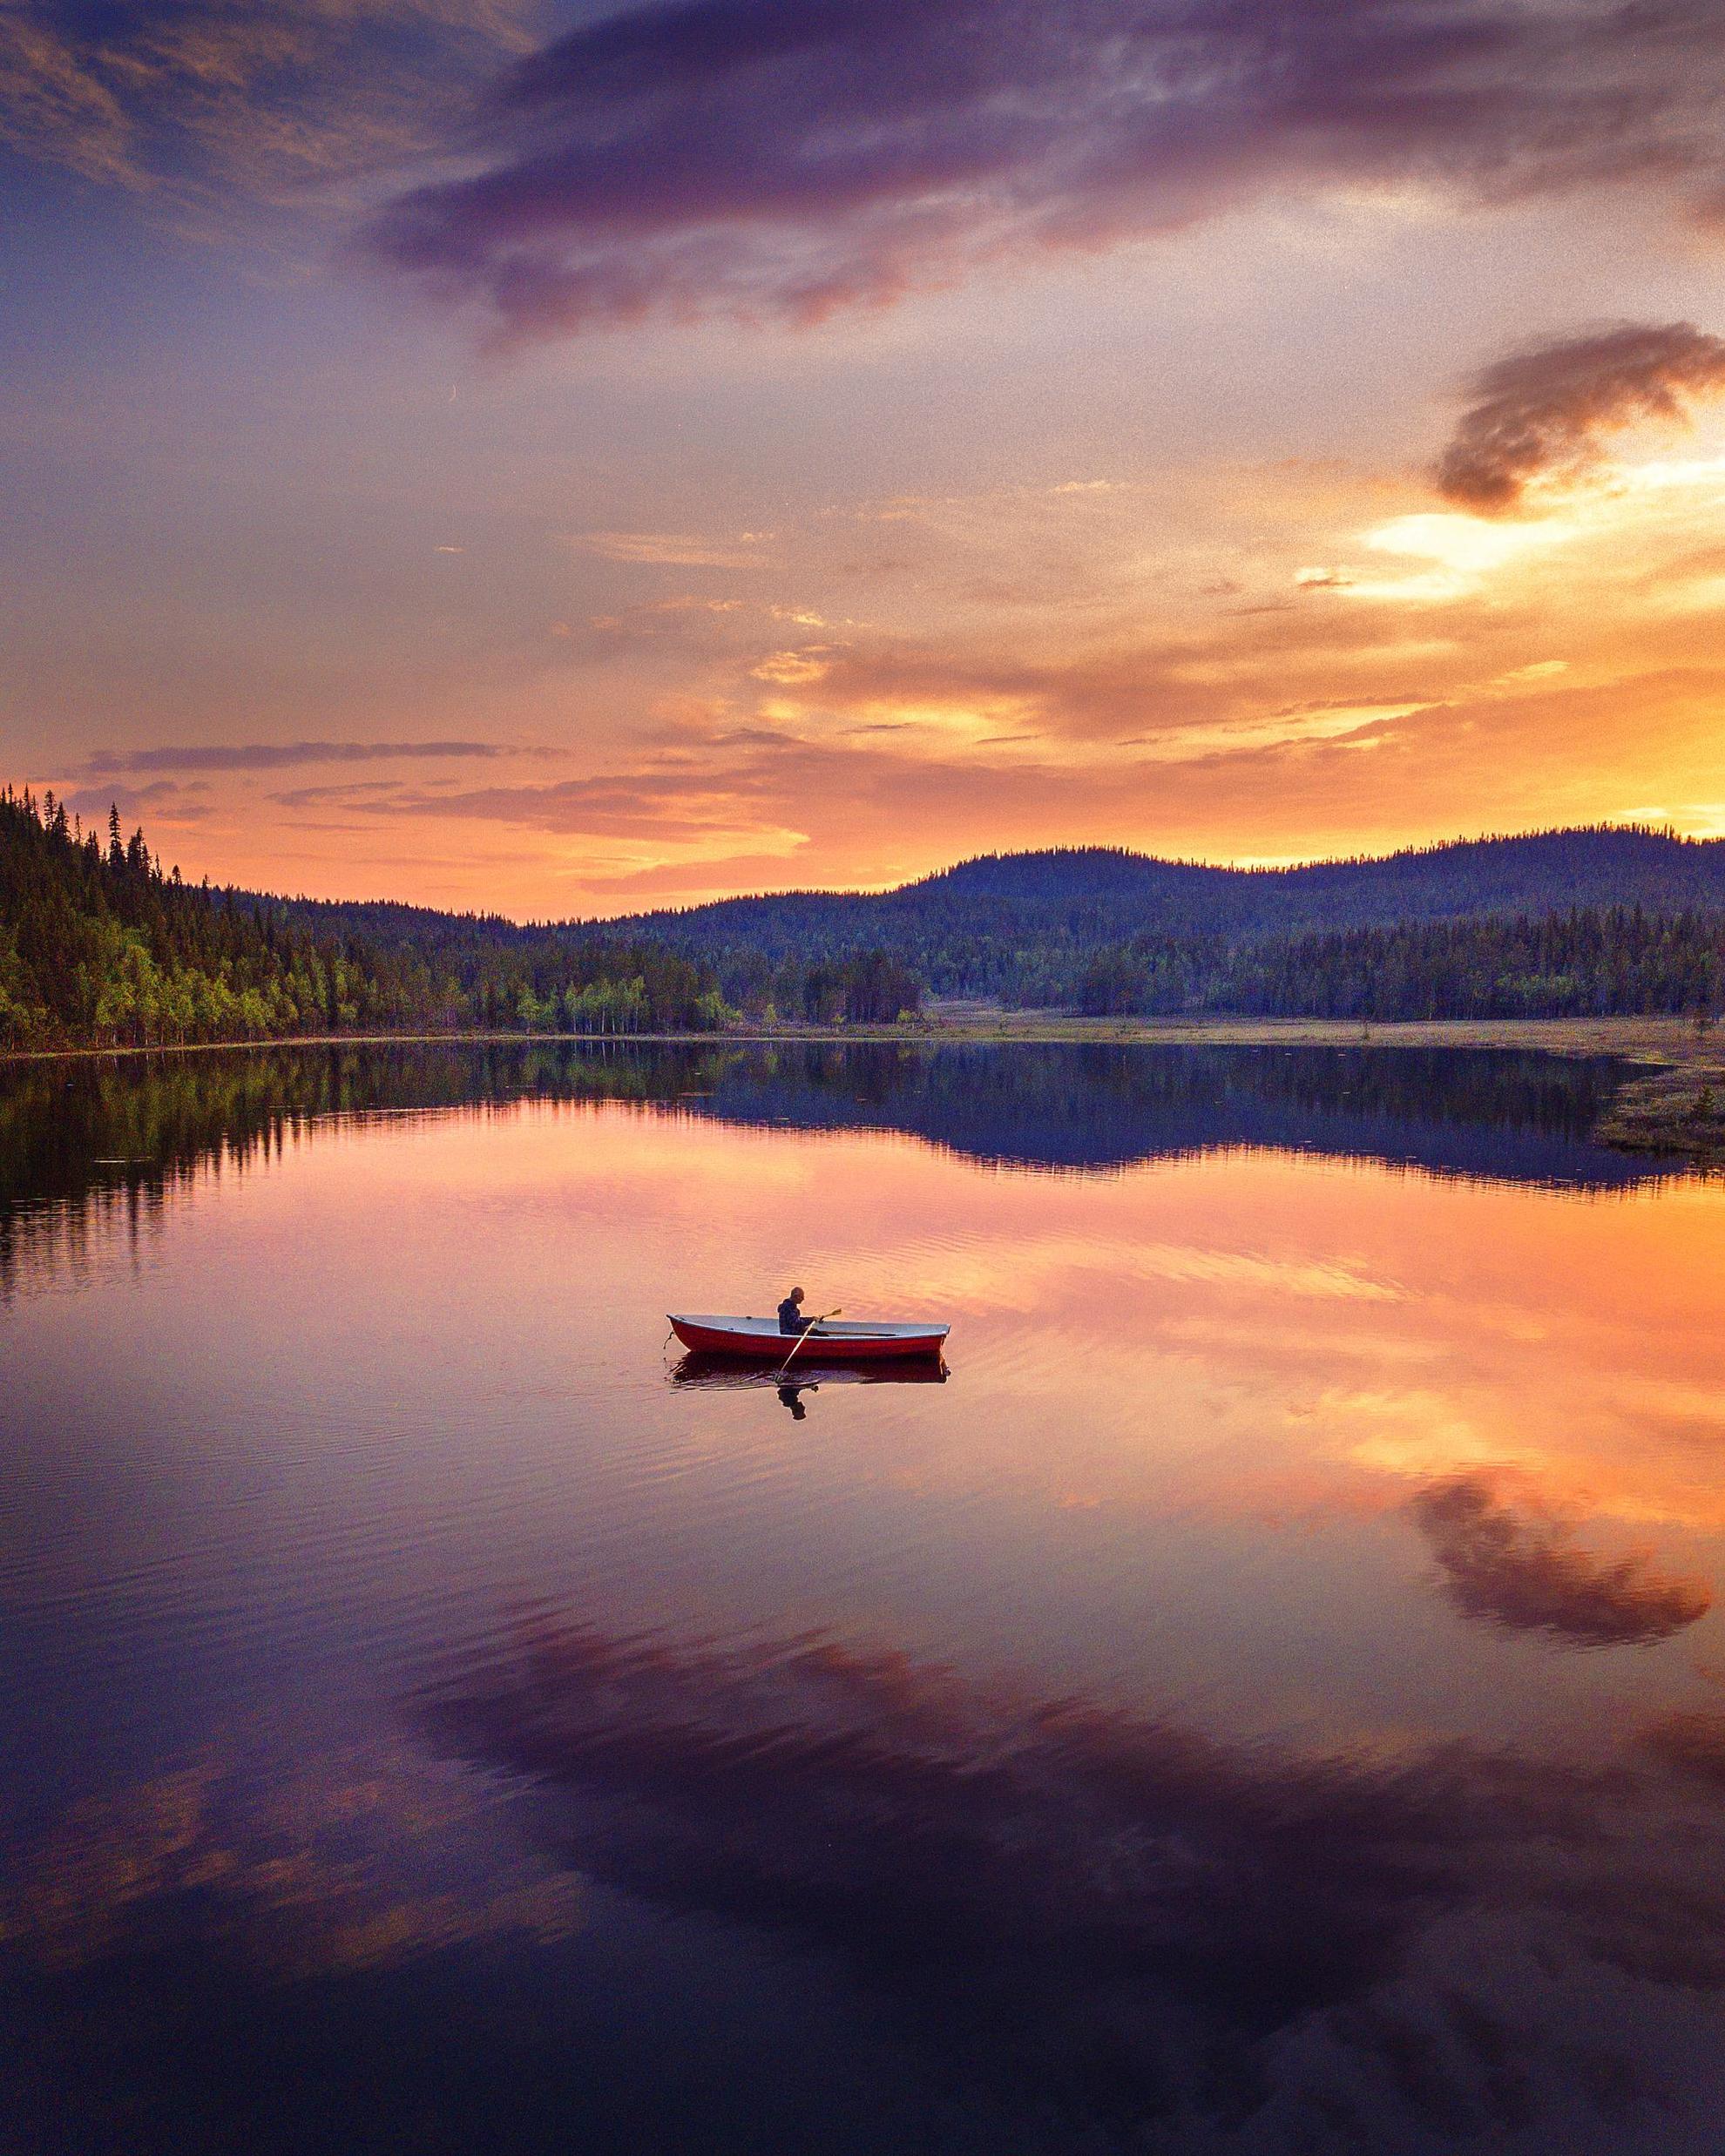 Eine Person sitzt in einem Boot und geleitet über einen See. Im Hintergrund ist ein Gebirge zu sehen und das Bild wurde in der Nacht in Schwedisch Lappland aufgenommen, weshalb die Sonne die Umgebung in orangenes Licht wirft..